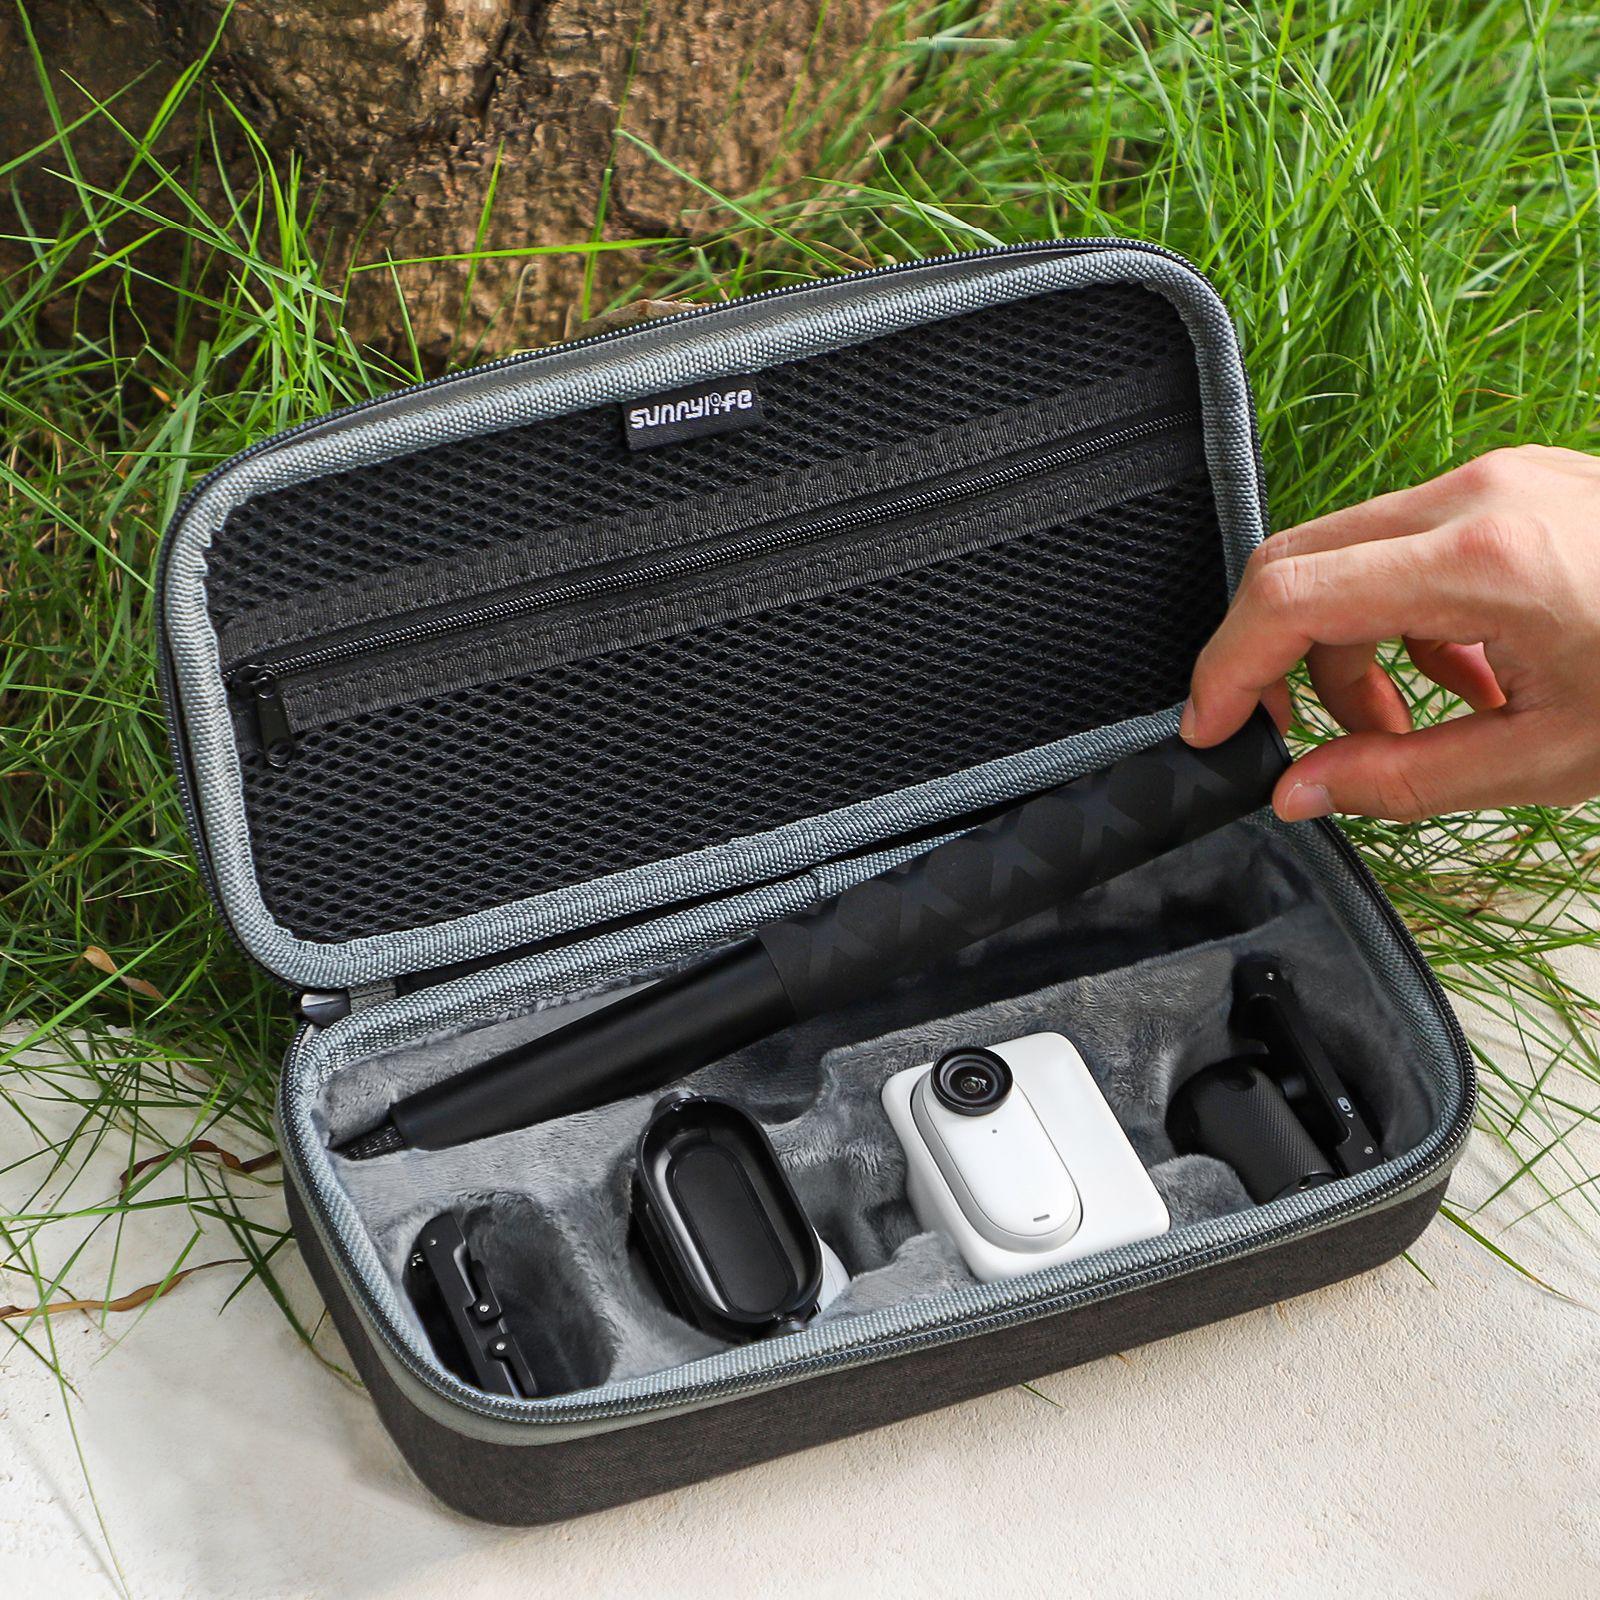 Camera Bag Portable Storage Box Duable Travel Case for Instant Camera Camera